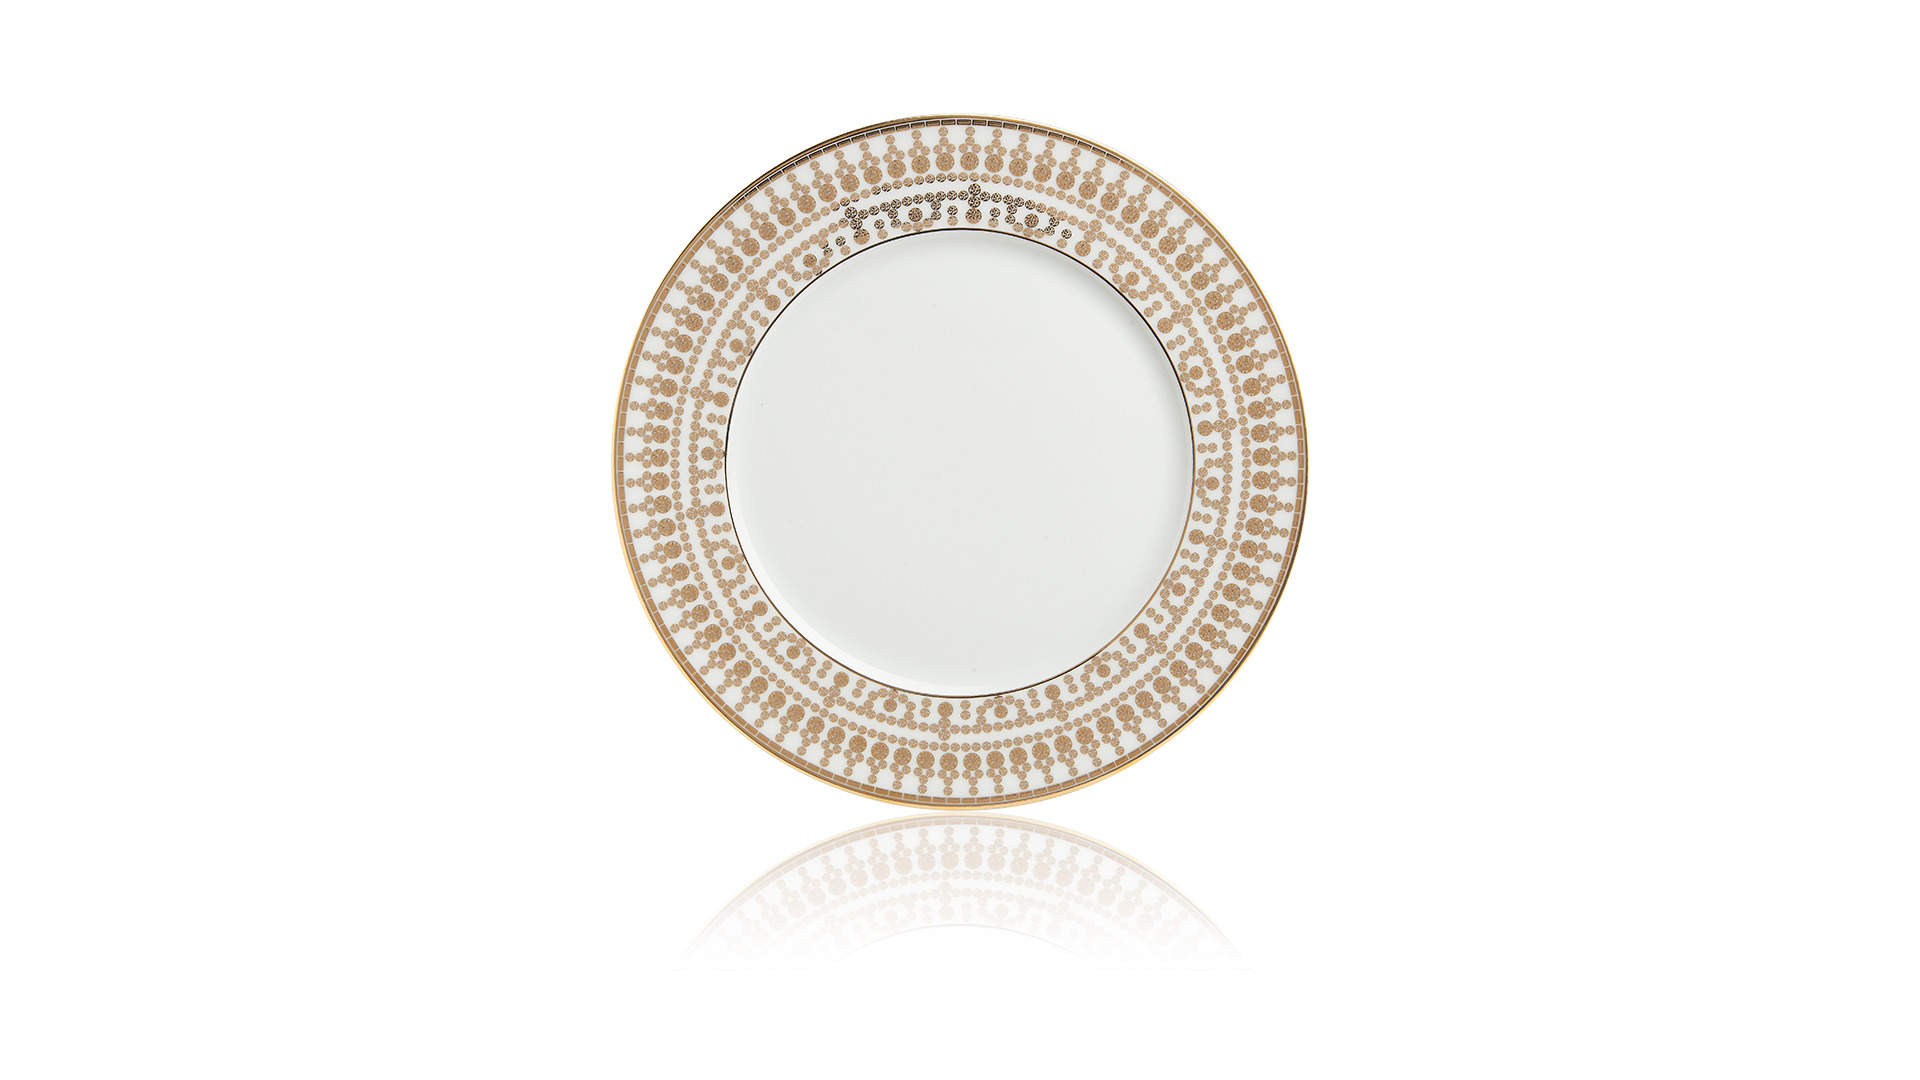 Тарелка закусочная Haviland Тиара 22 см, широкий кант, белый, золотой декор